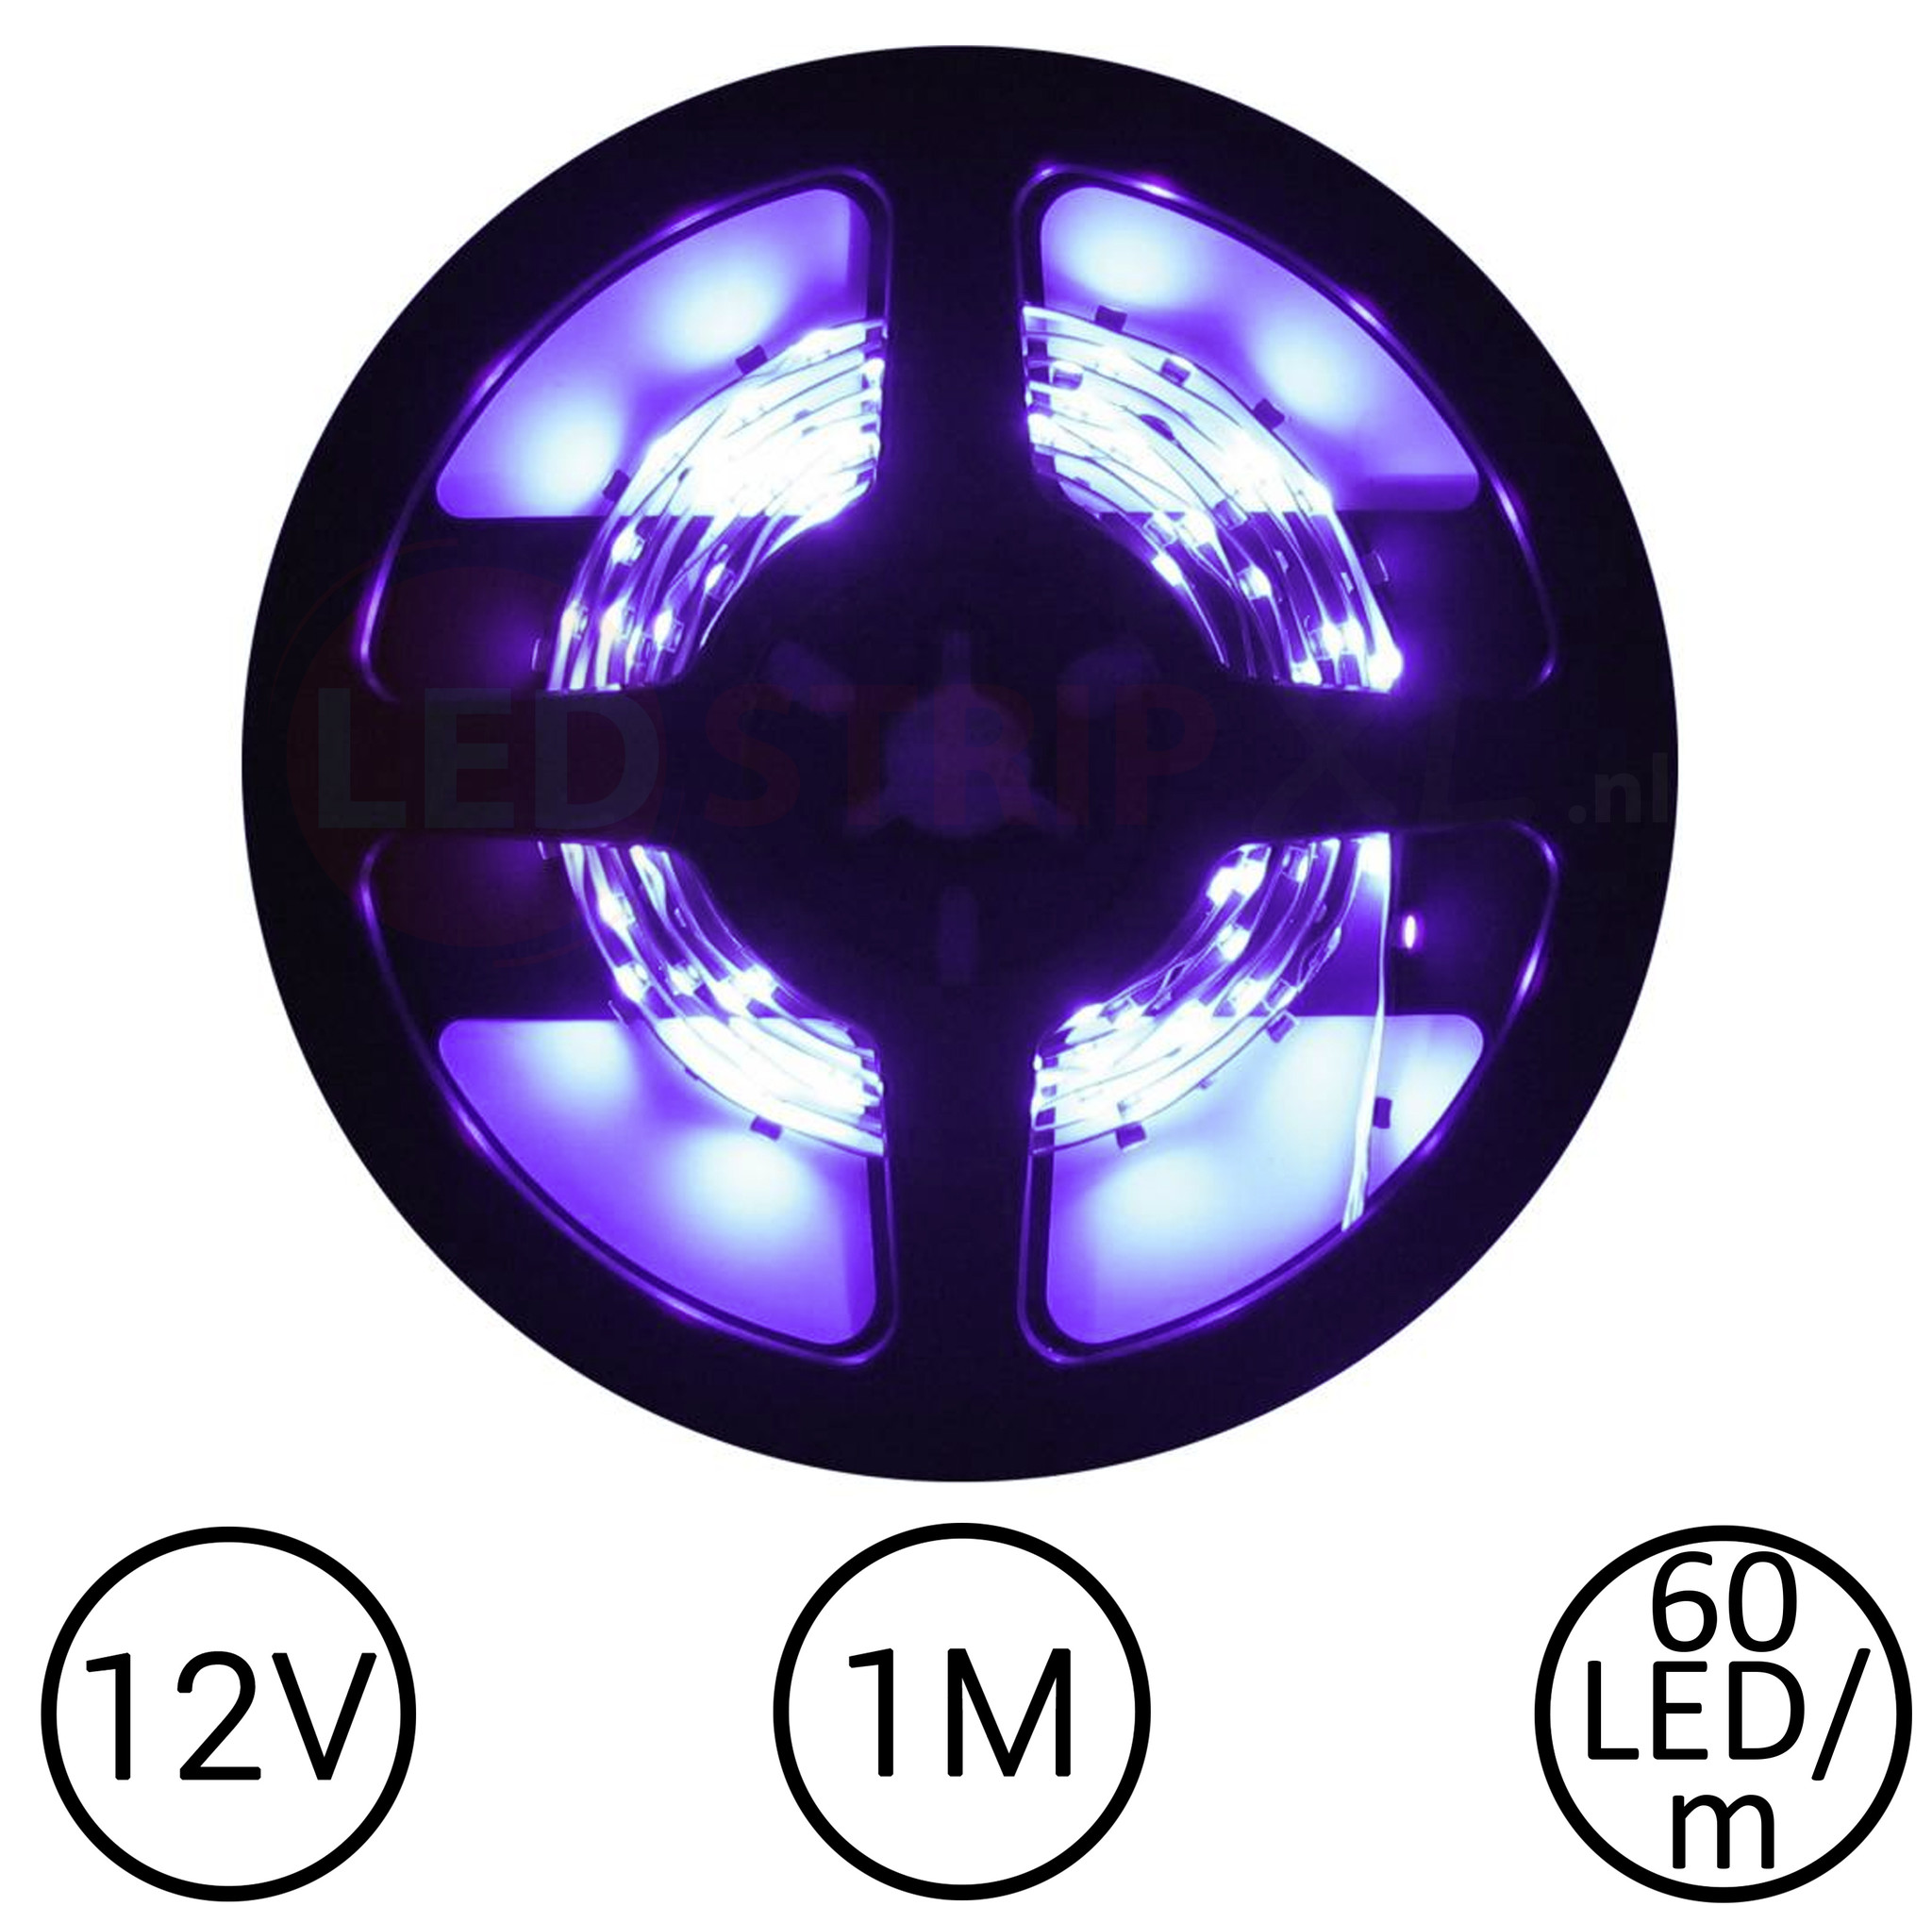 Gastheer van beschaving Seraph LED Strip Paars 1 Meter 60 LED per meter 12V | LEDStripXL - LEDStripXL